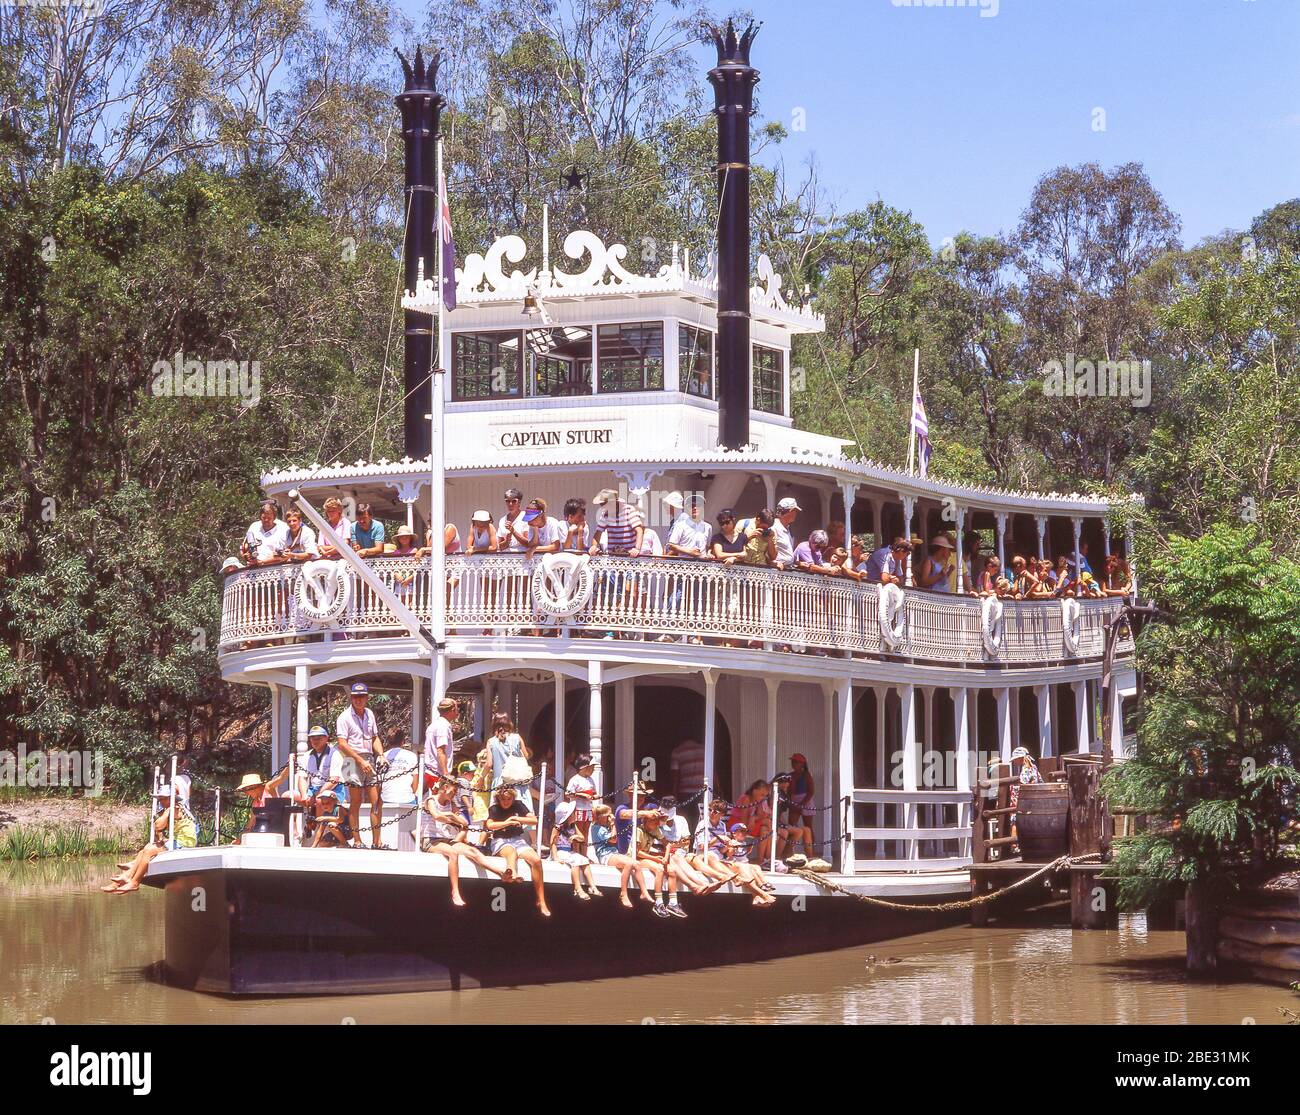 Promenade en bateau à vapeur sur la rivière « Captain Sturt » au parc à thème Dreamworld, Coomera, City of Gold Coast, Queensland, Australie Banque D'Images